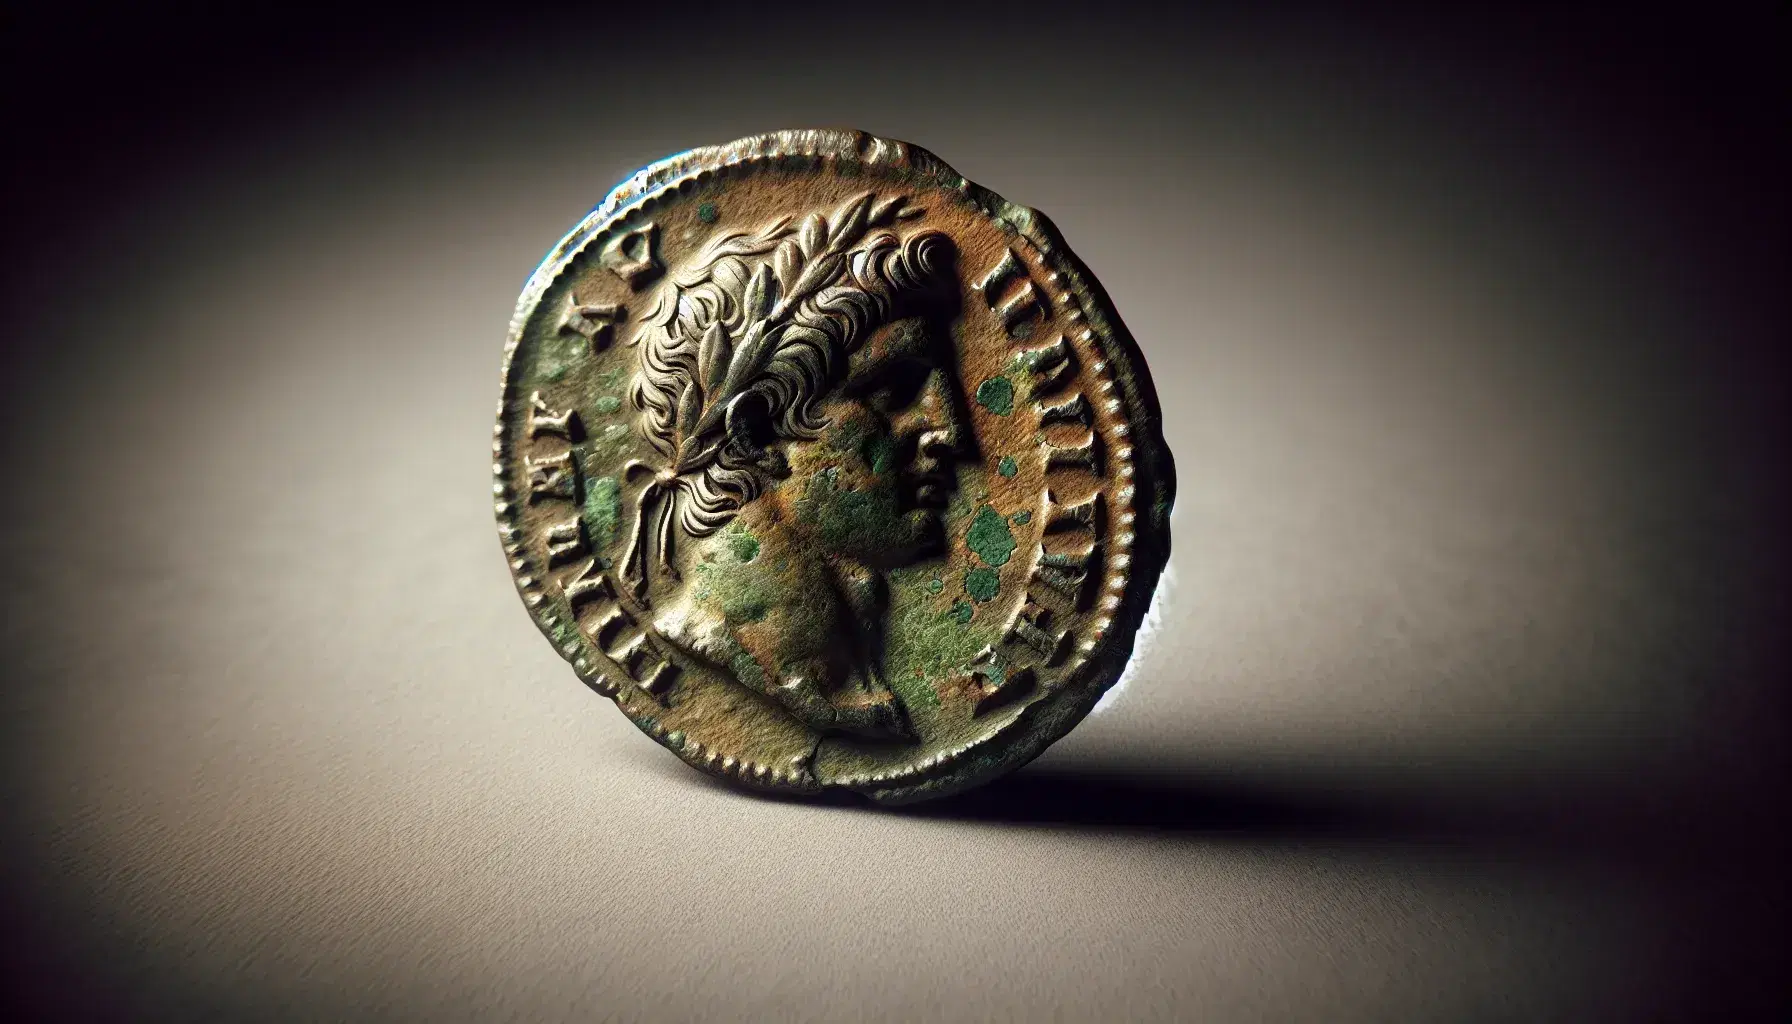 Moneta romana antica ossidata con profilo imperiale e tracce di corona d'alloro, su superficie neutra.